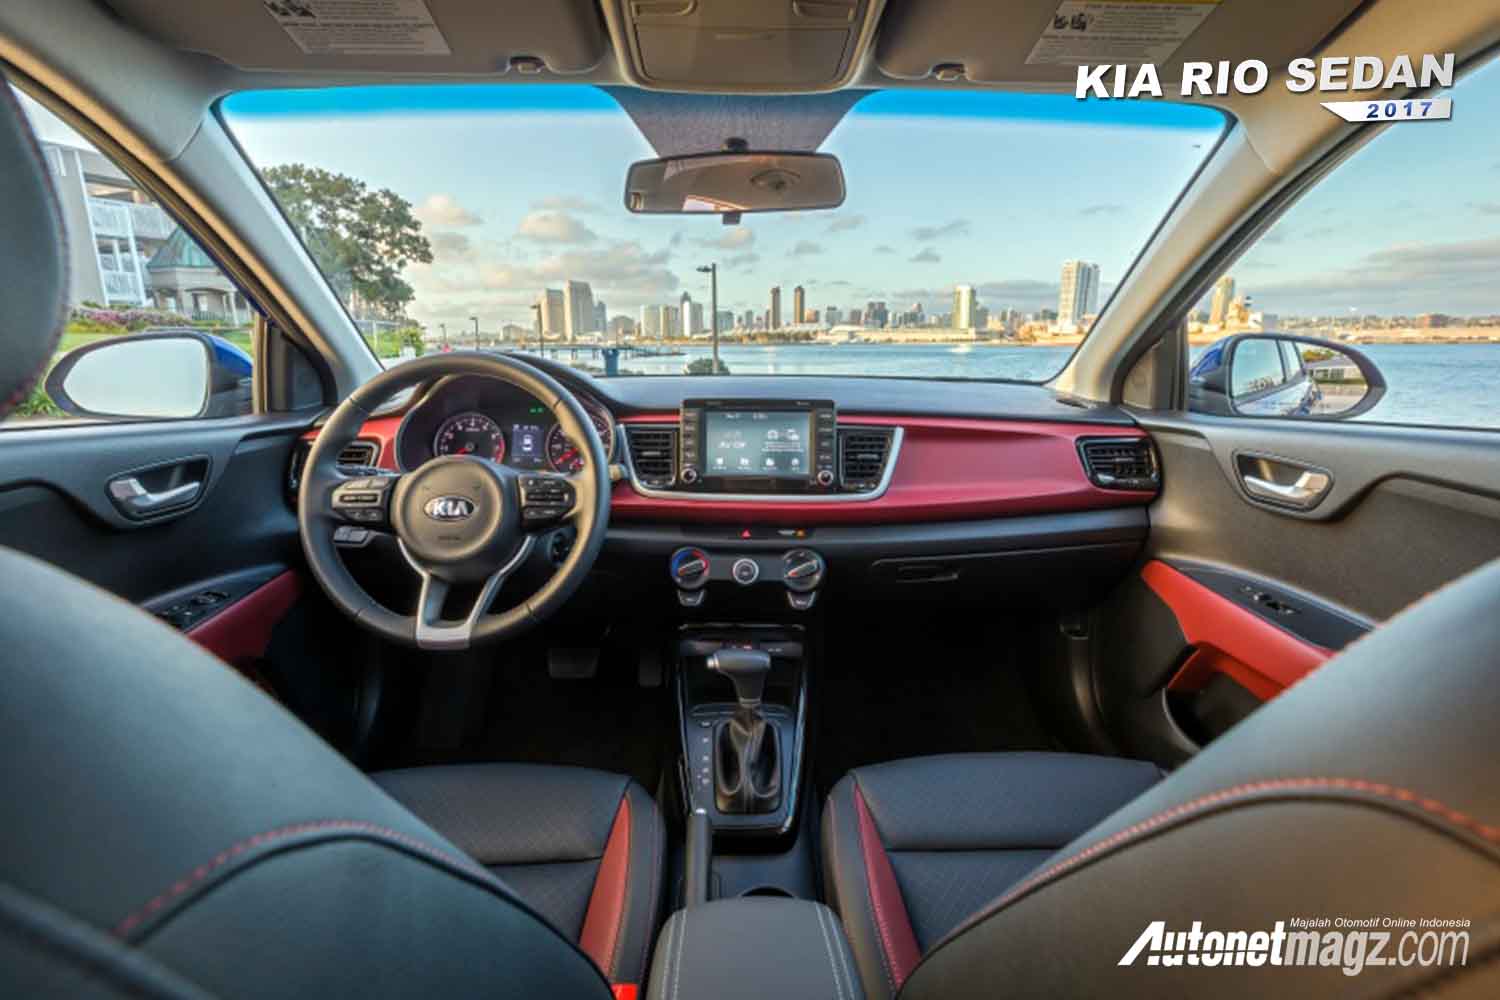 KIA Rio Sedan 2017 - interior dua tone